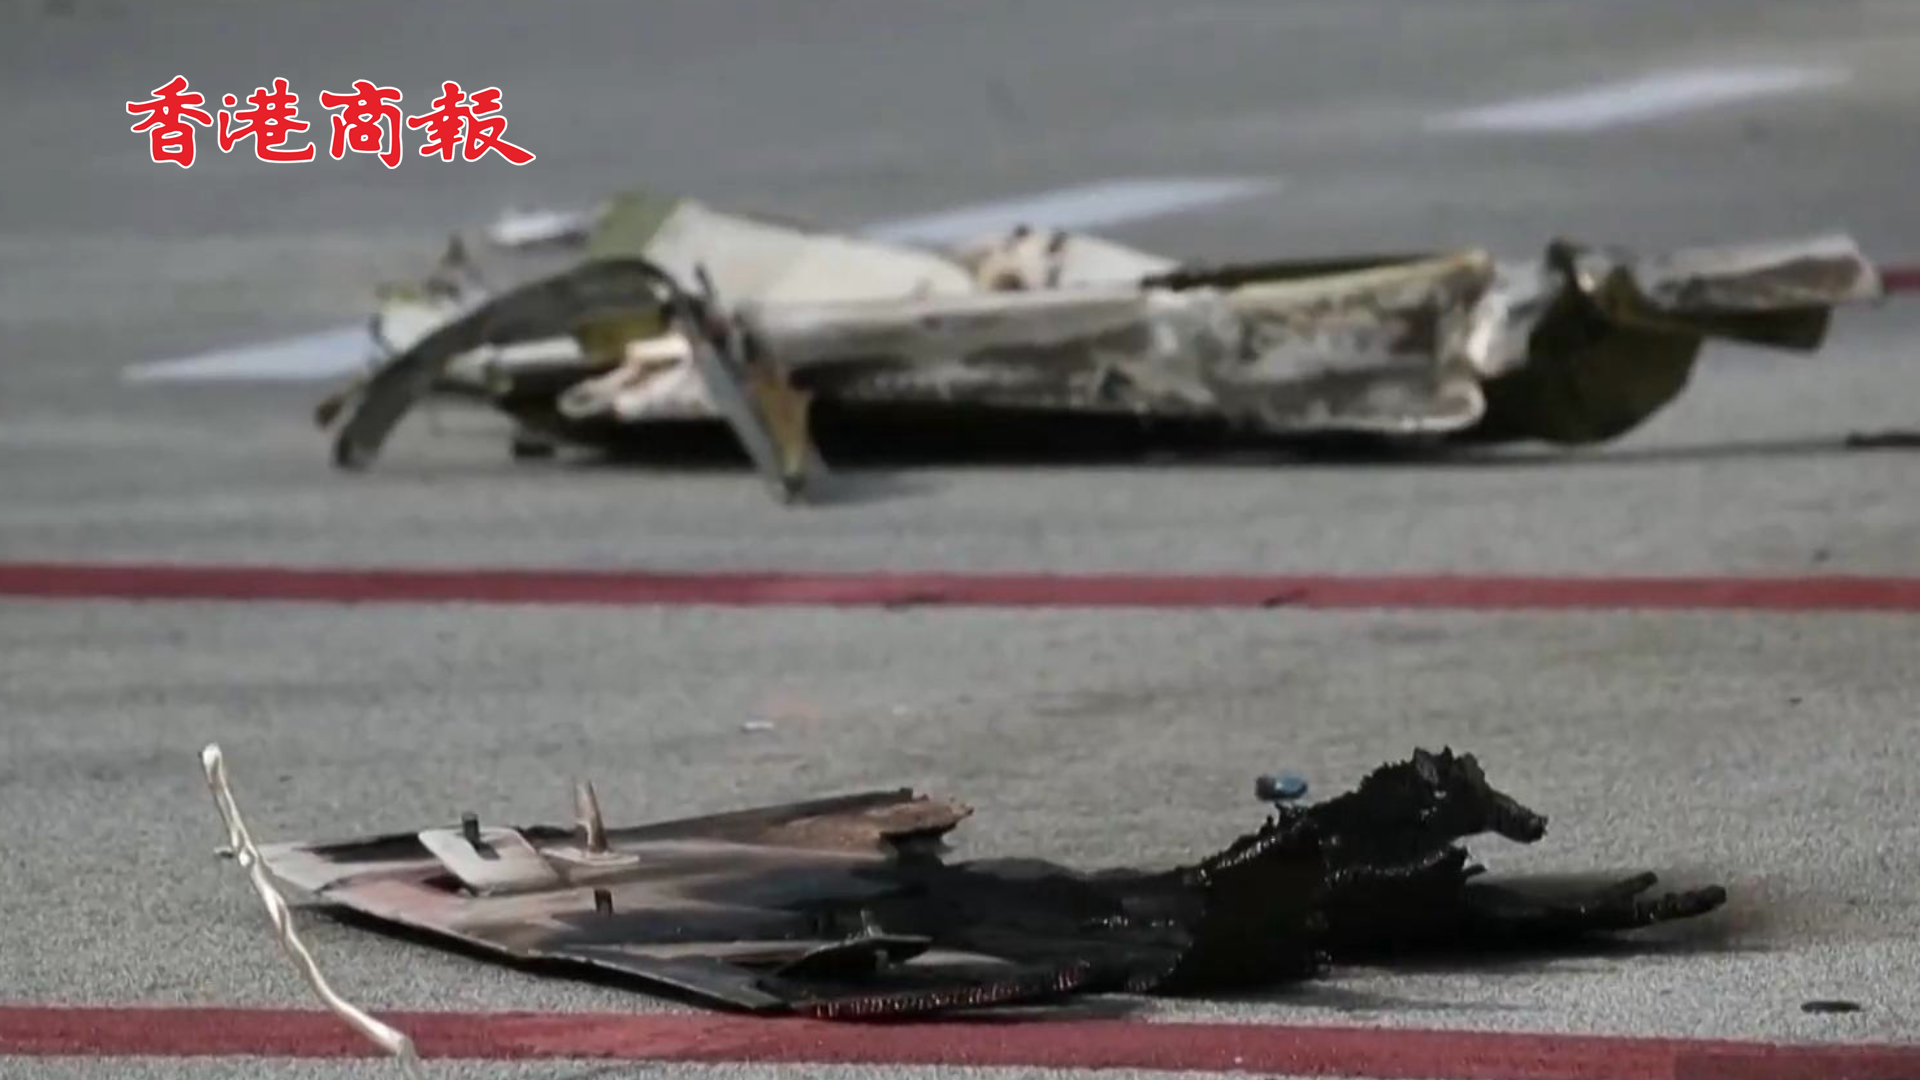 有片 | 馬來西亞一飛機在公路墜毀撞多車已致10死 機上人員全部遇難